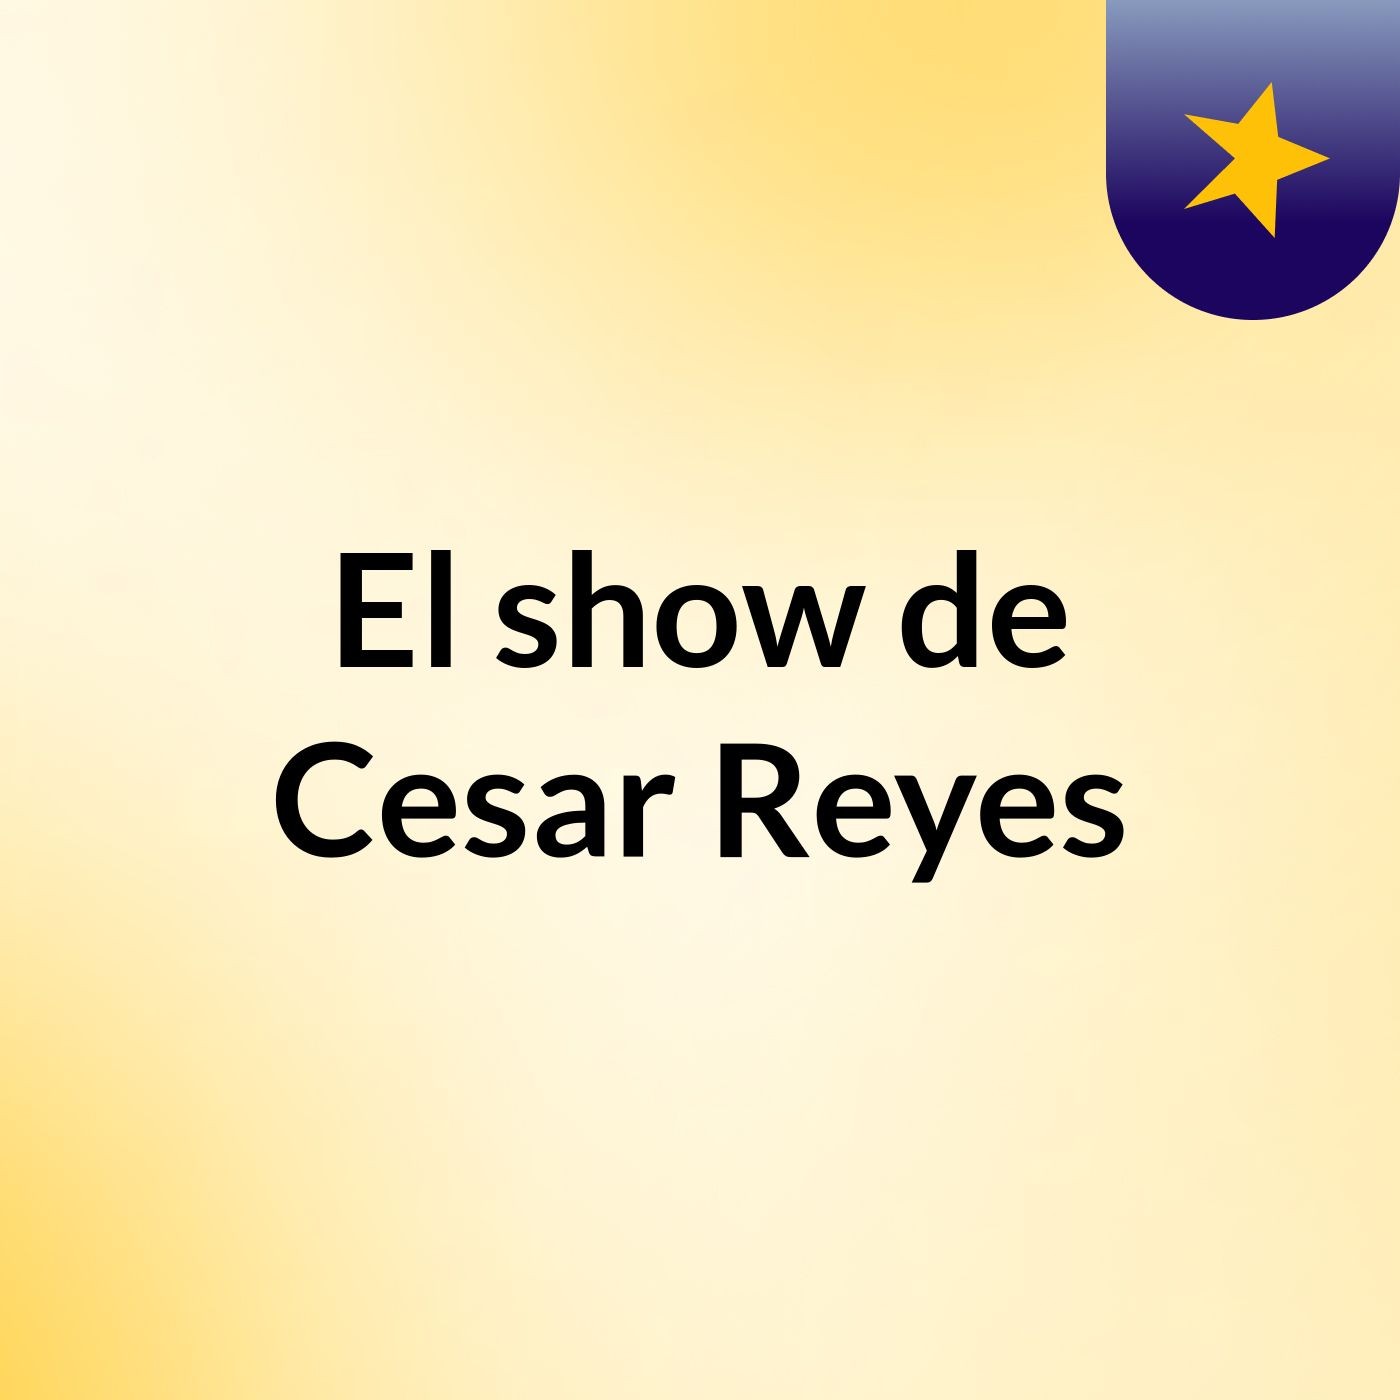 El show de Cesar Reyes